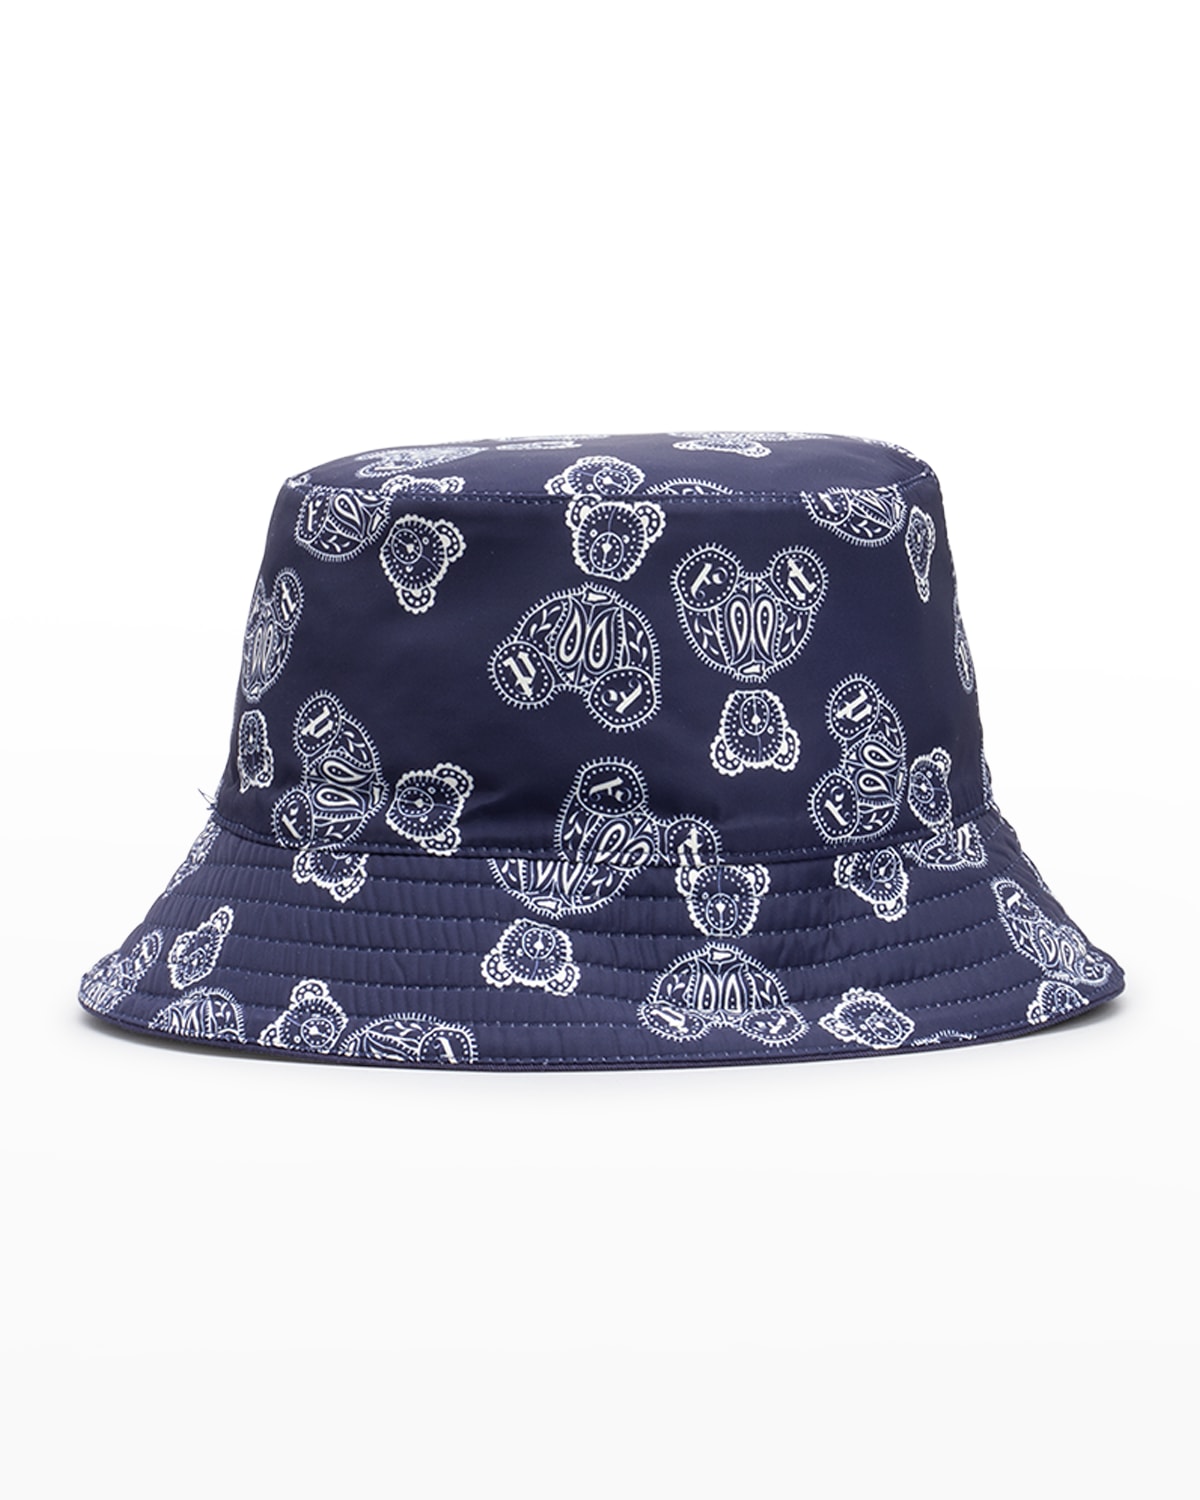 Kid's Teddy Bear Logo Bucket Hat, Size S-M